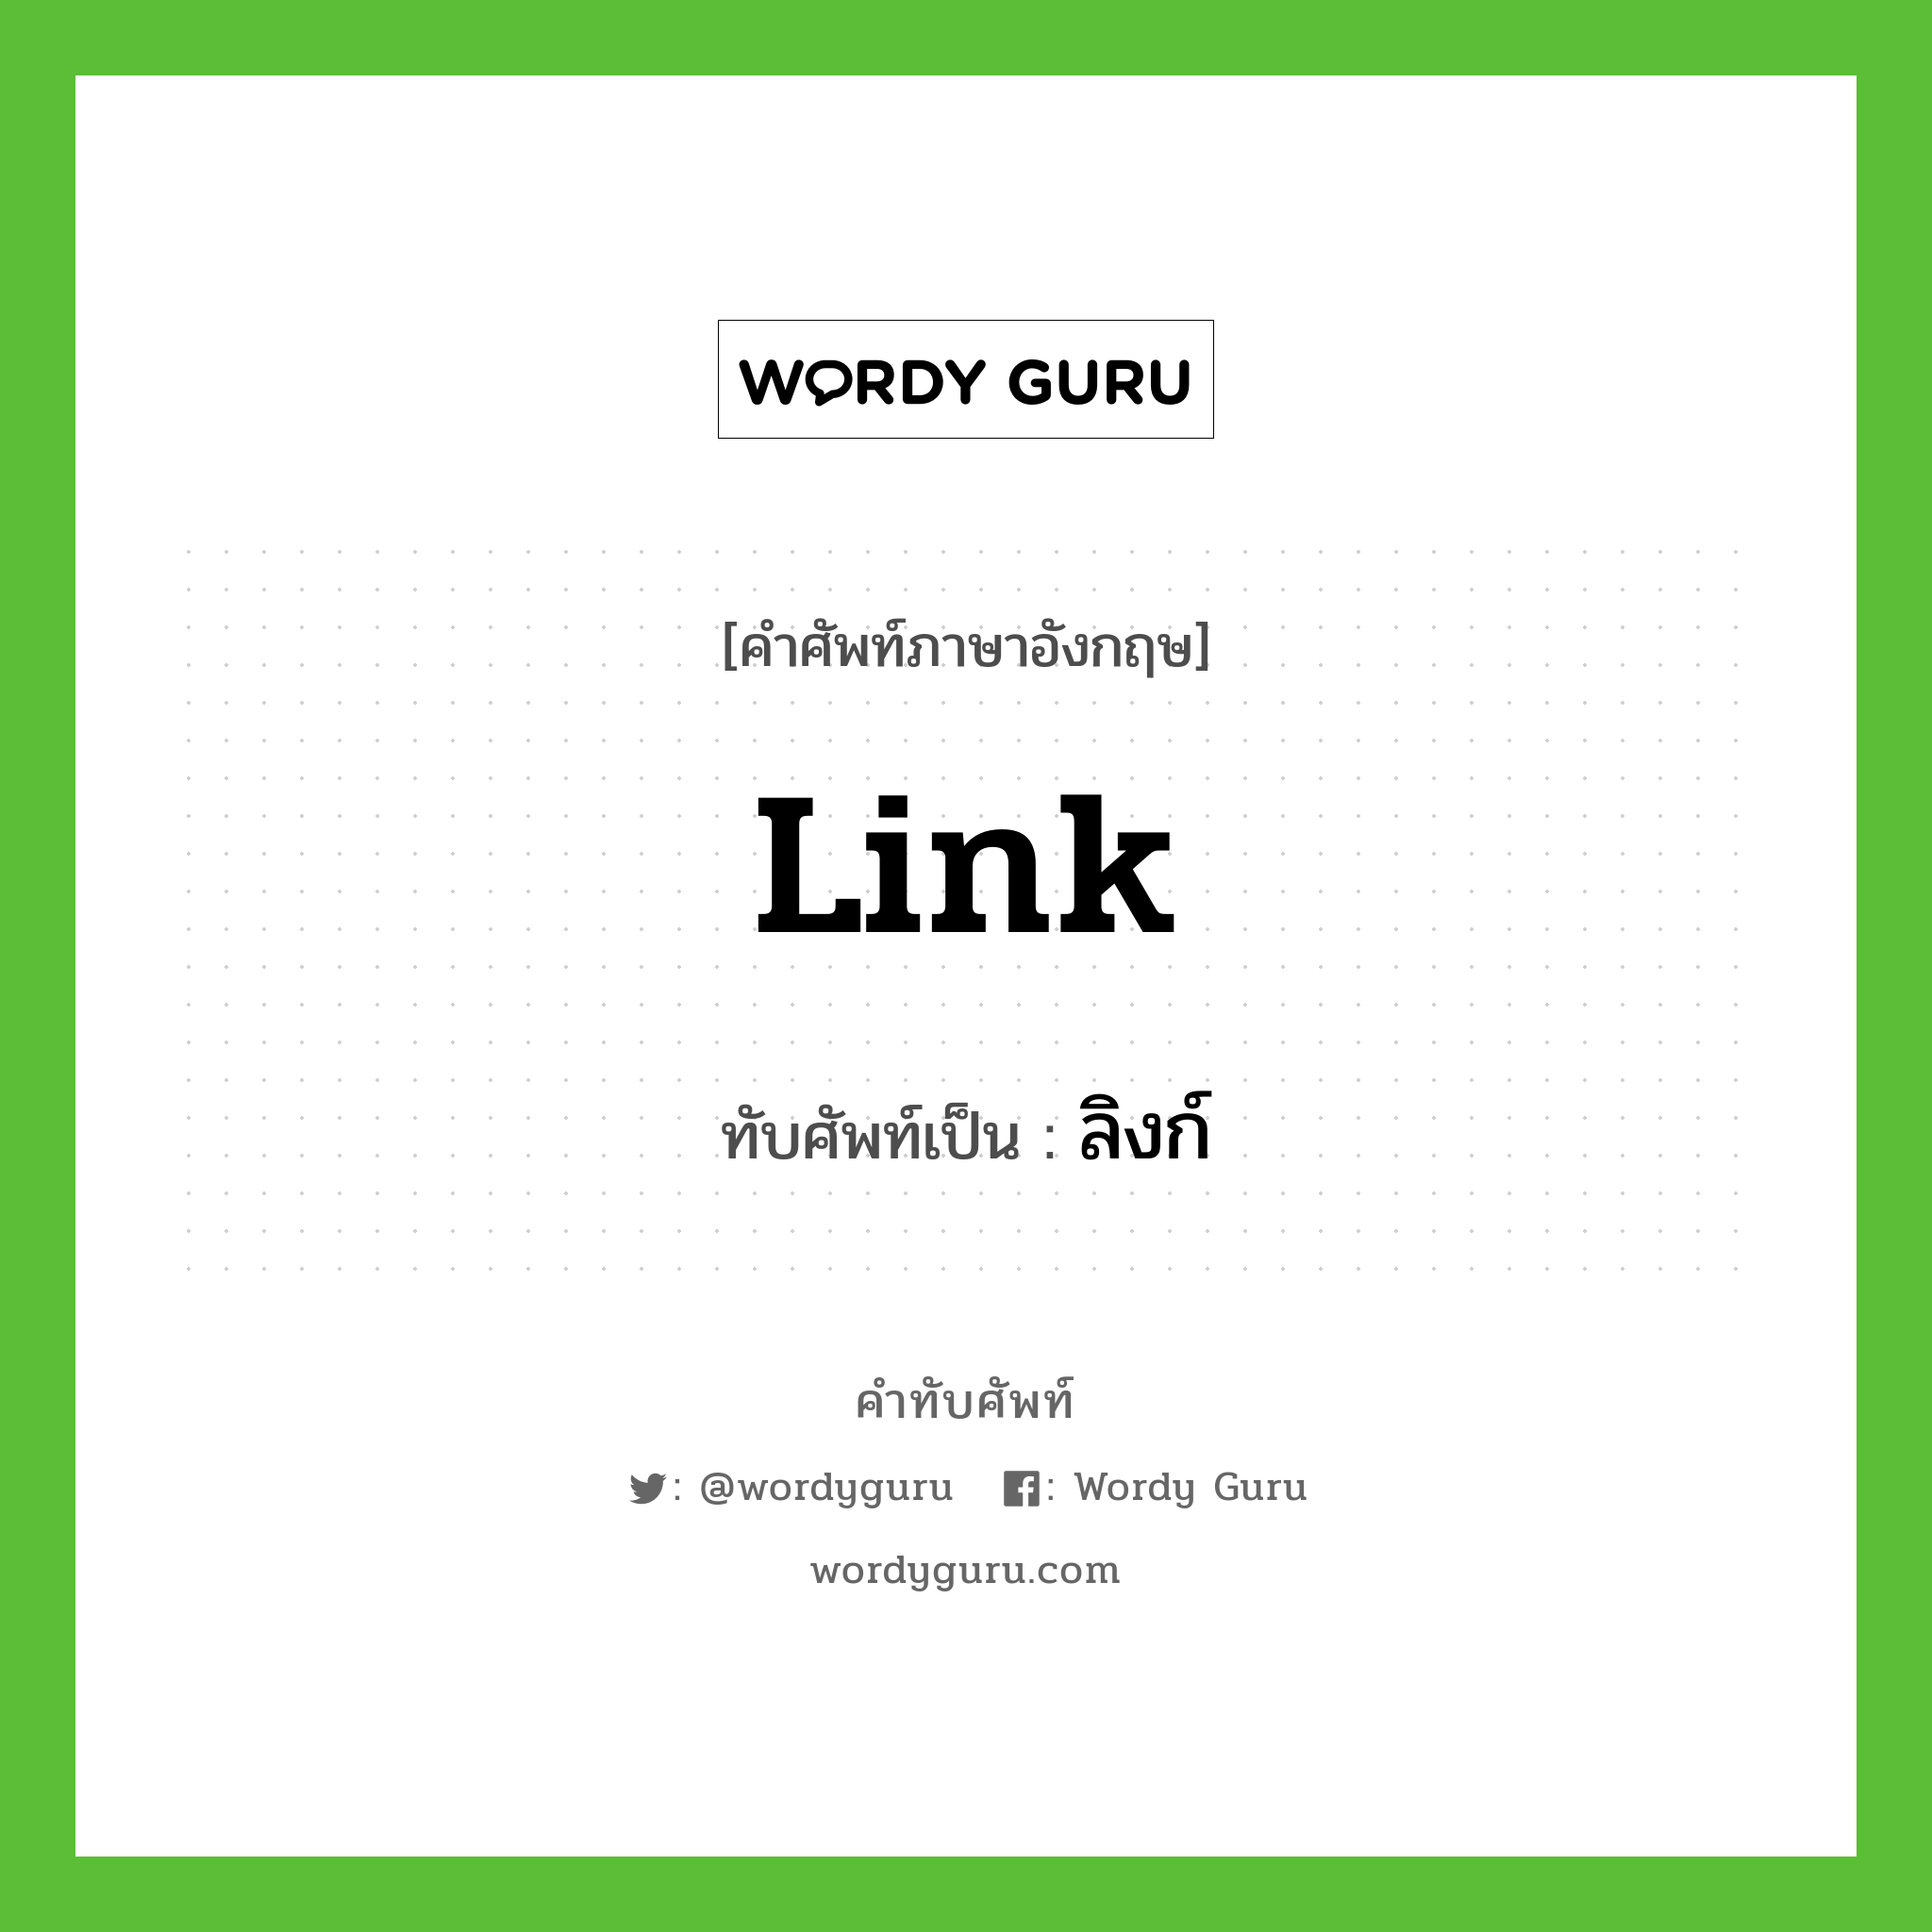 link เขียนเป็นคำไทยว่าอะไร?, คำศัพท์ภาษาอังกฤษ link ทับศัพท์เป็น ลิงก์ หมวด คอมพิวเตอร์ หมวด คอมพิวเตอร์